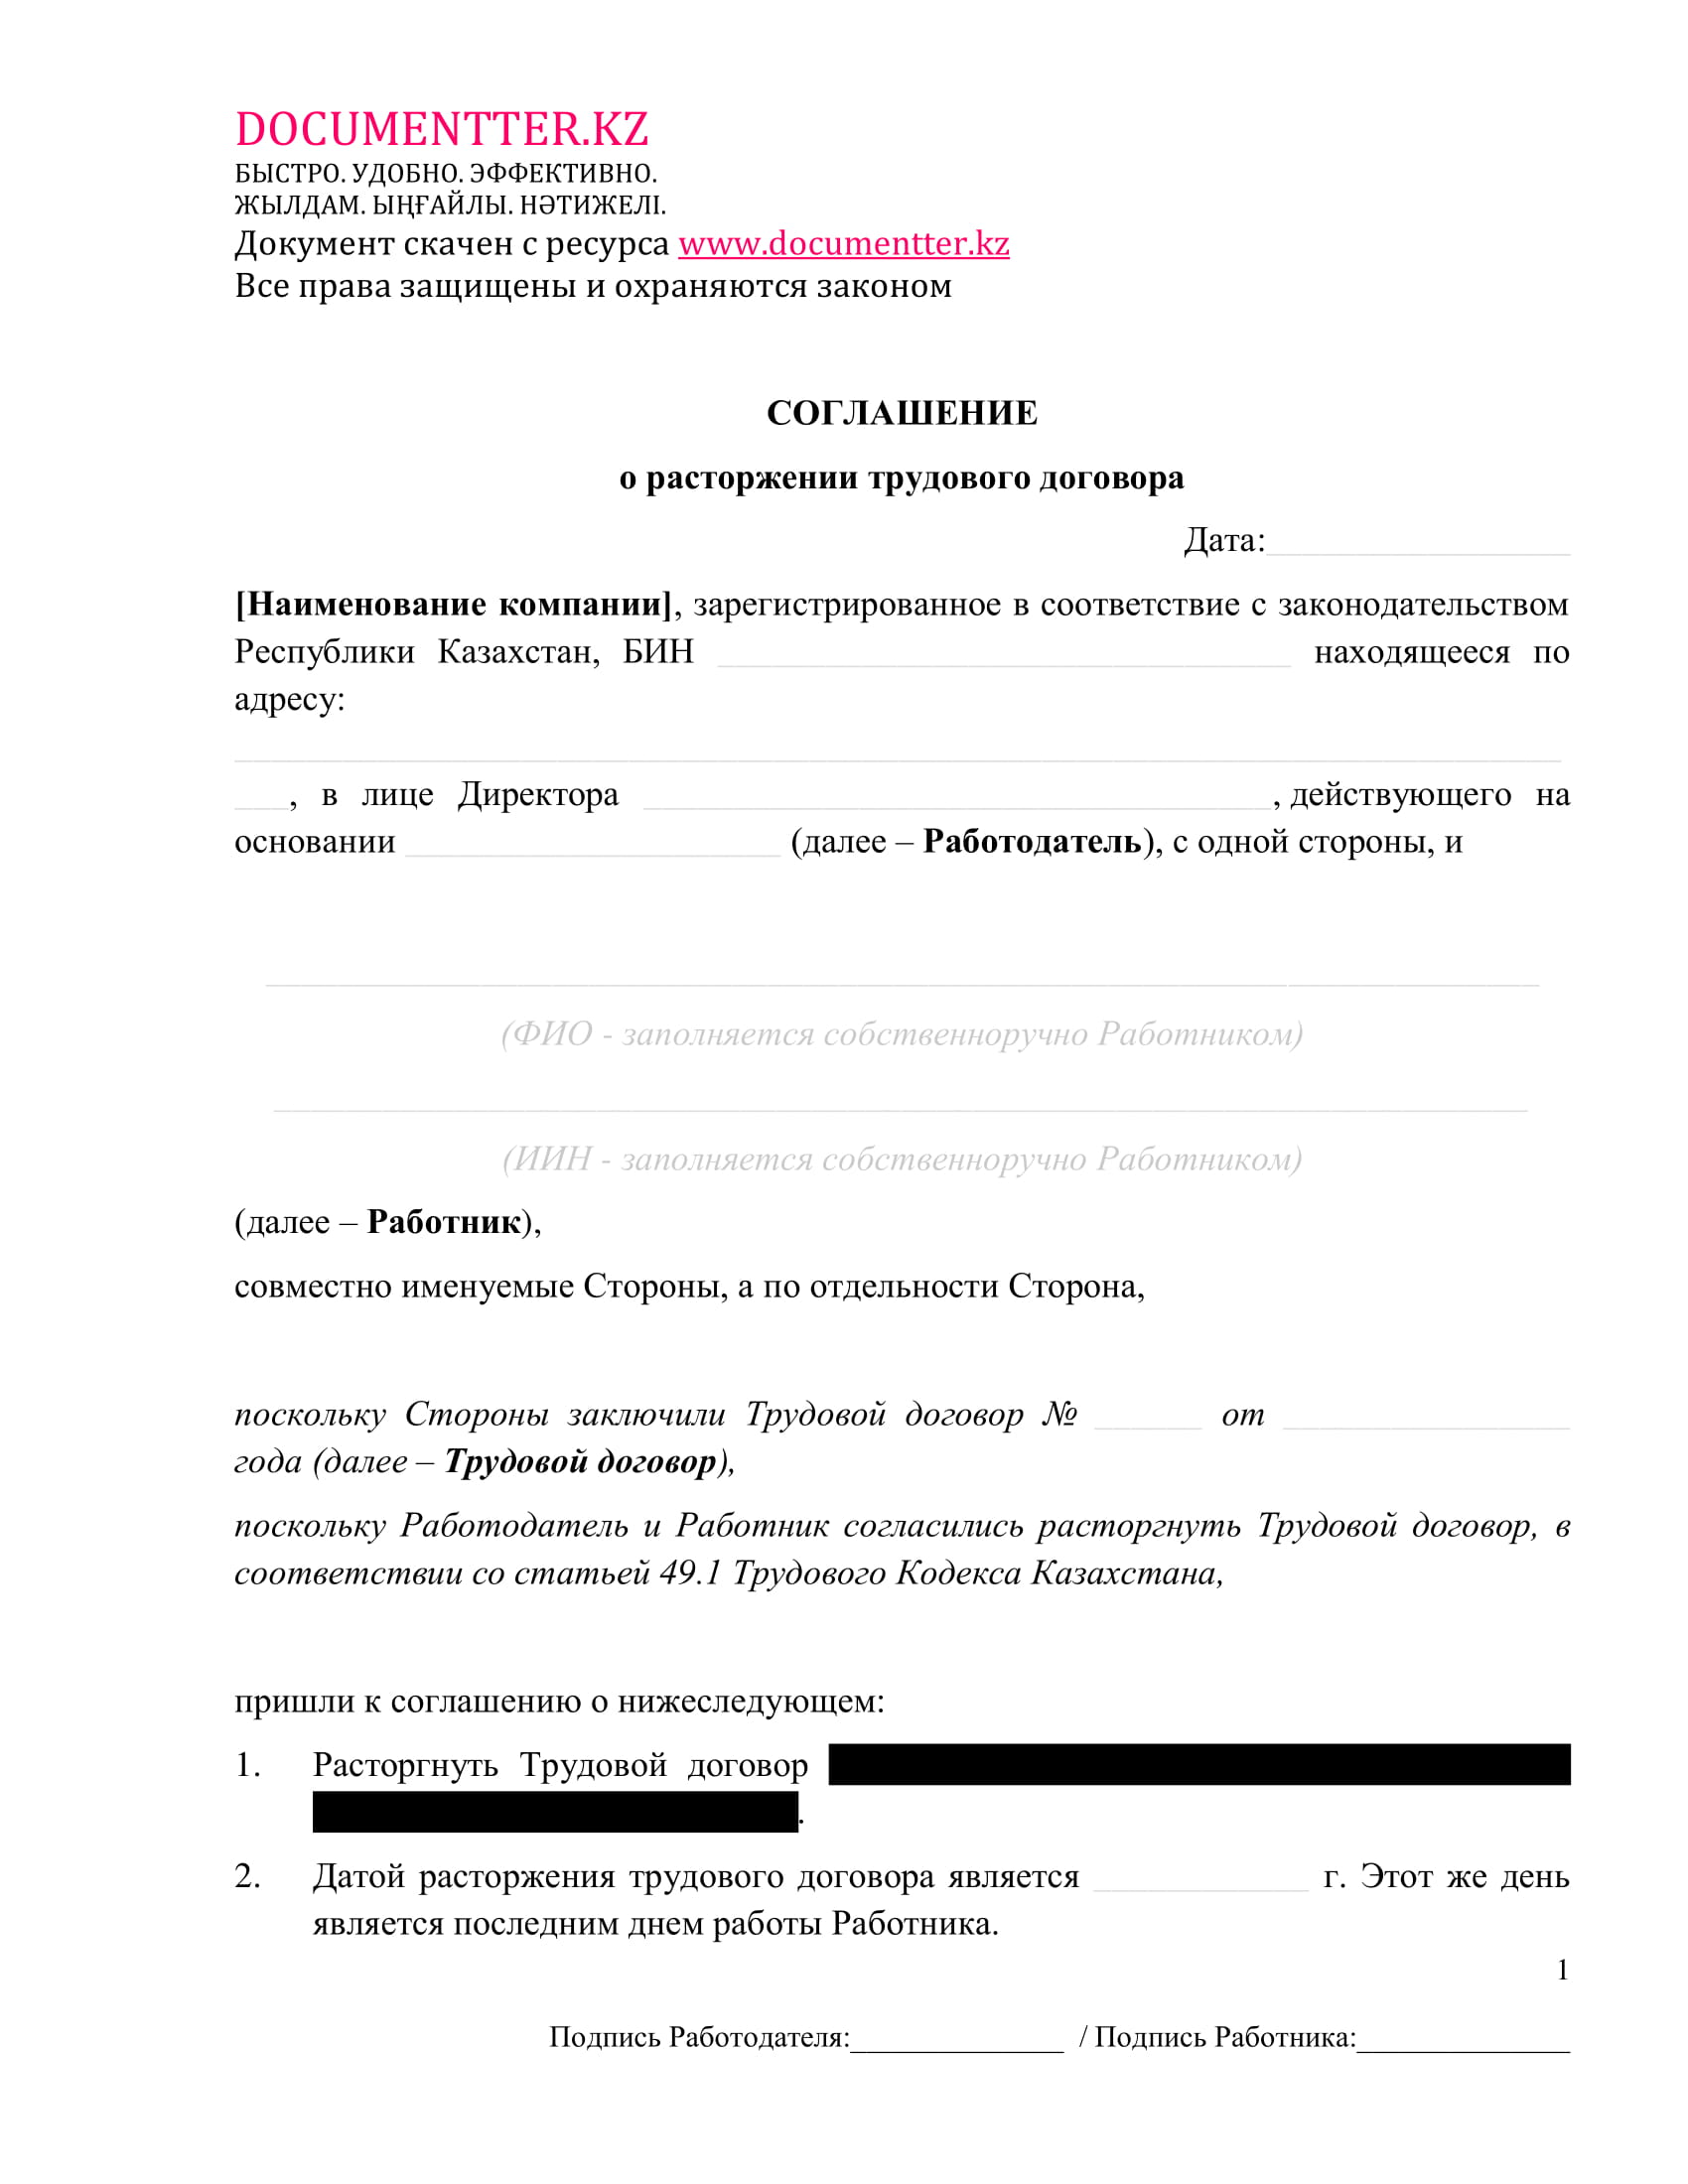 Соглашение о расторжении трудового договора 2 | documentter.kz в Казахстане 